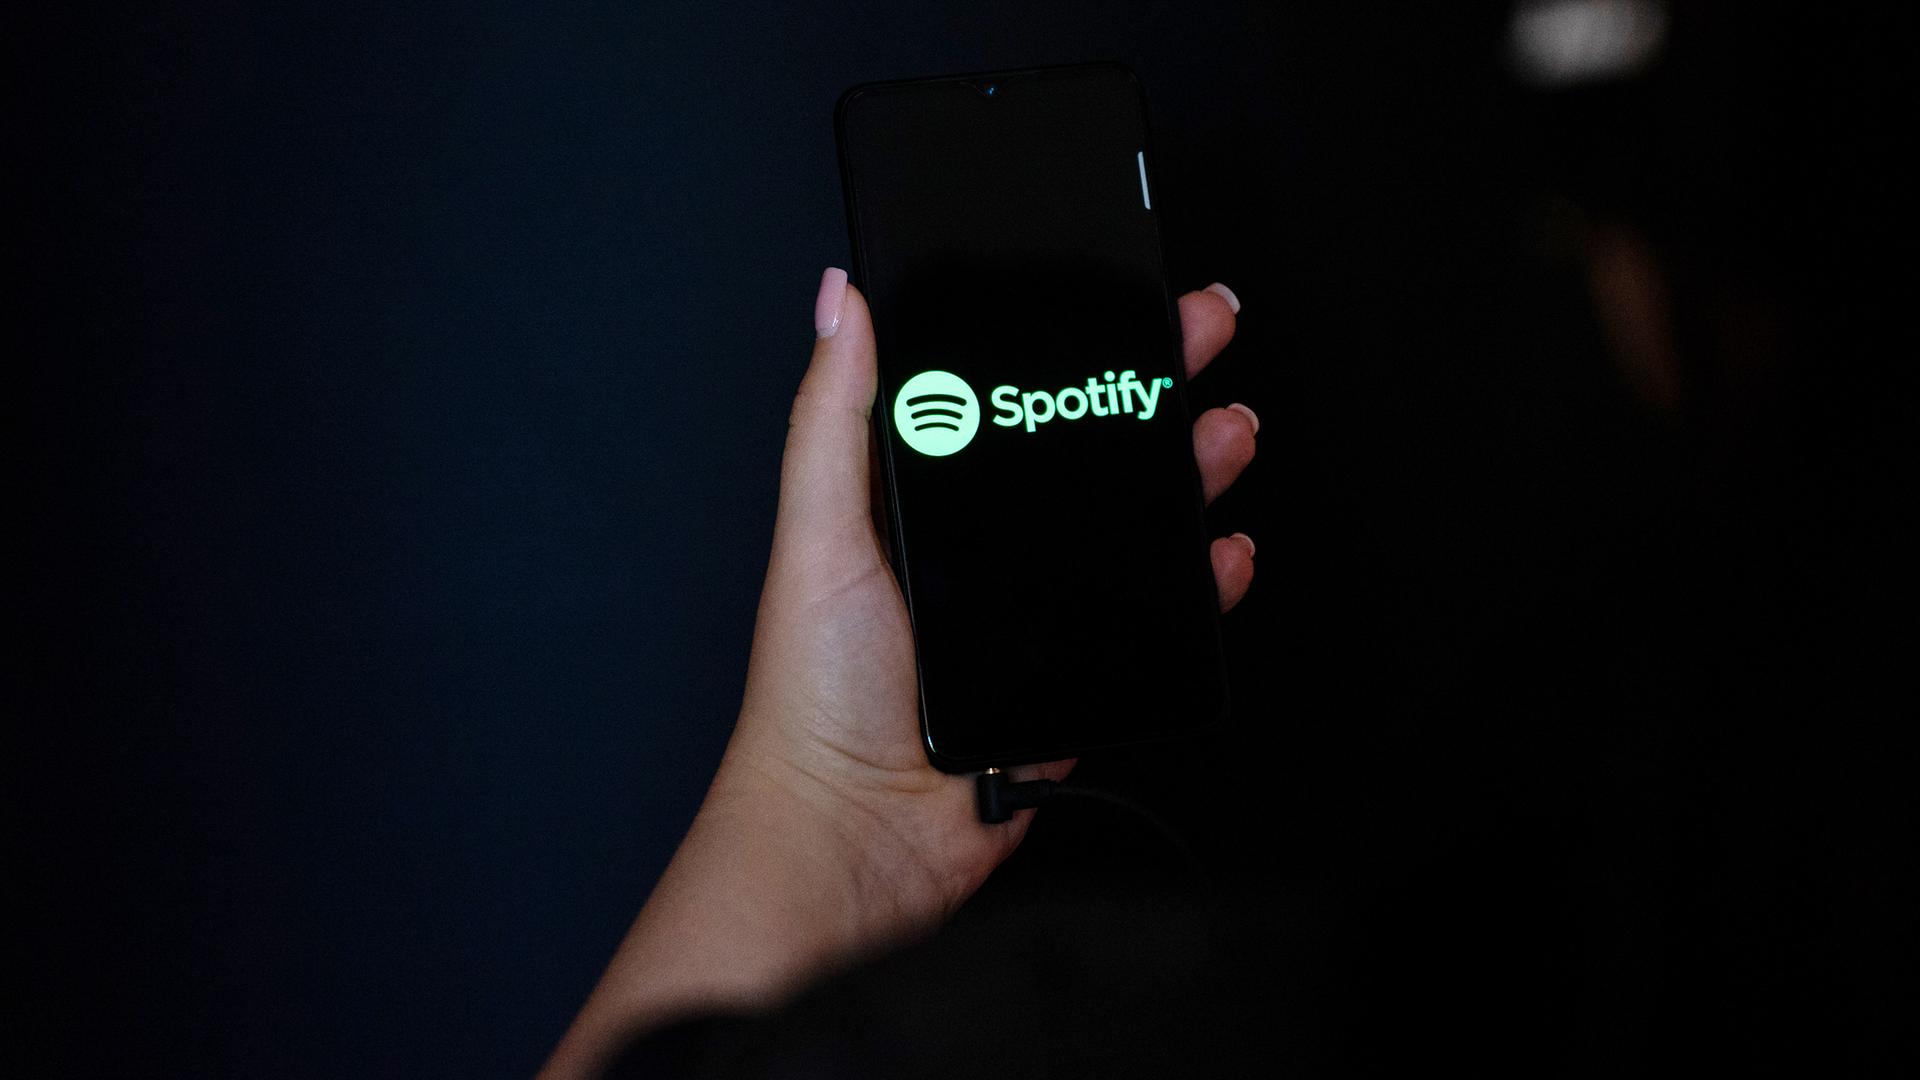 Eine Hand hält ein Smartphone mit dem Spotify Logo auf dem Display.